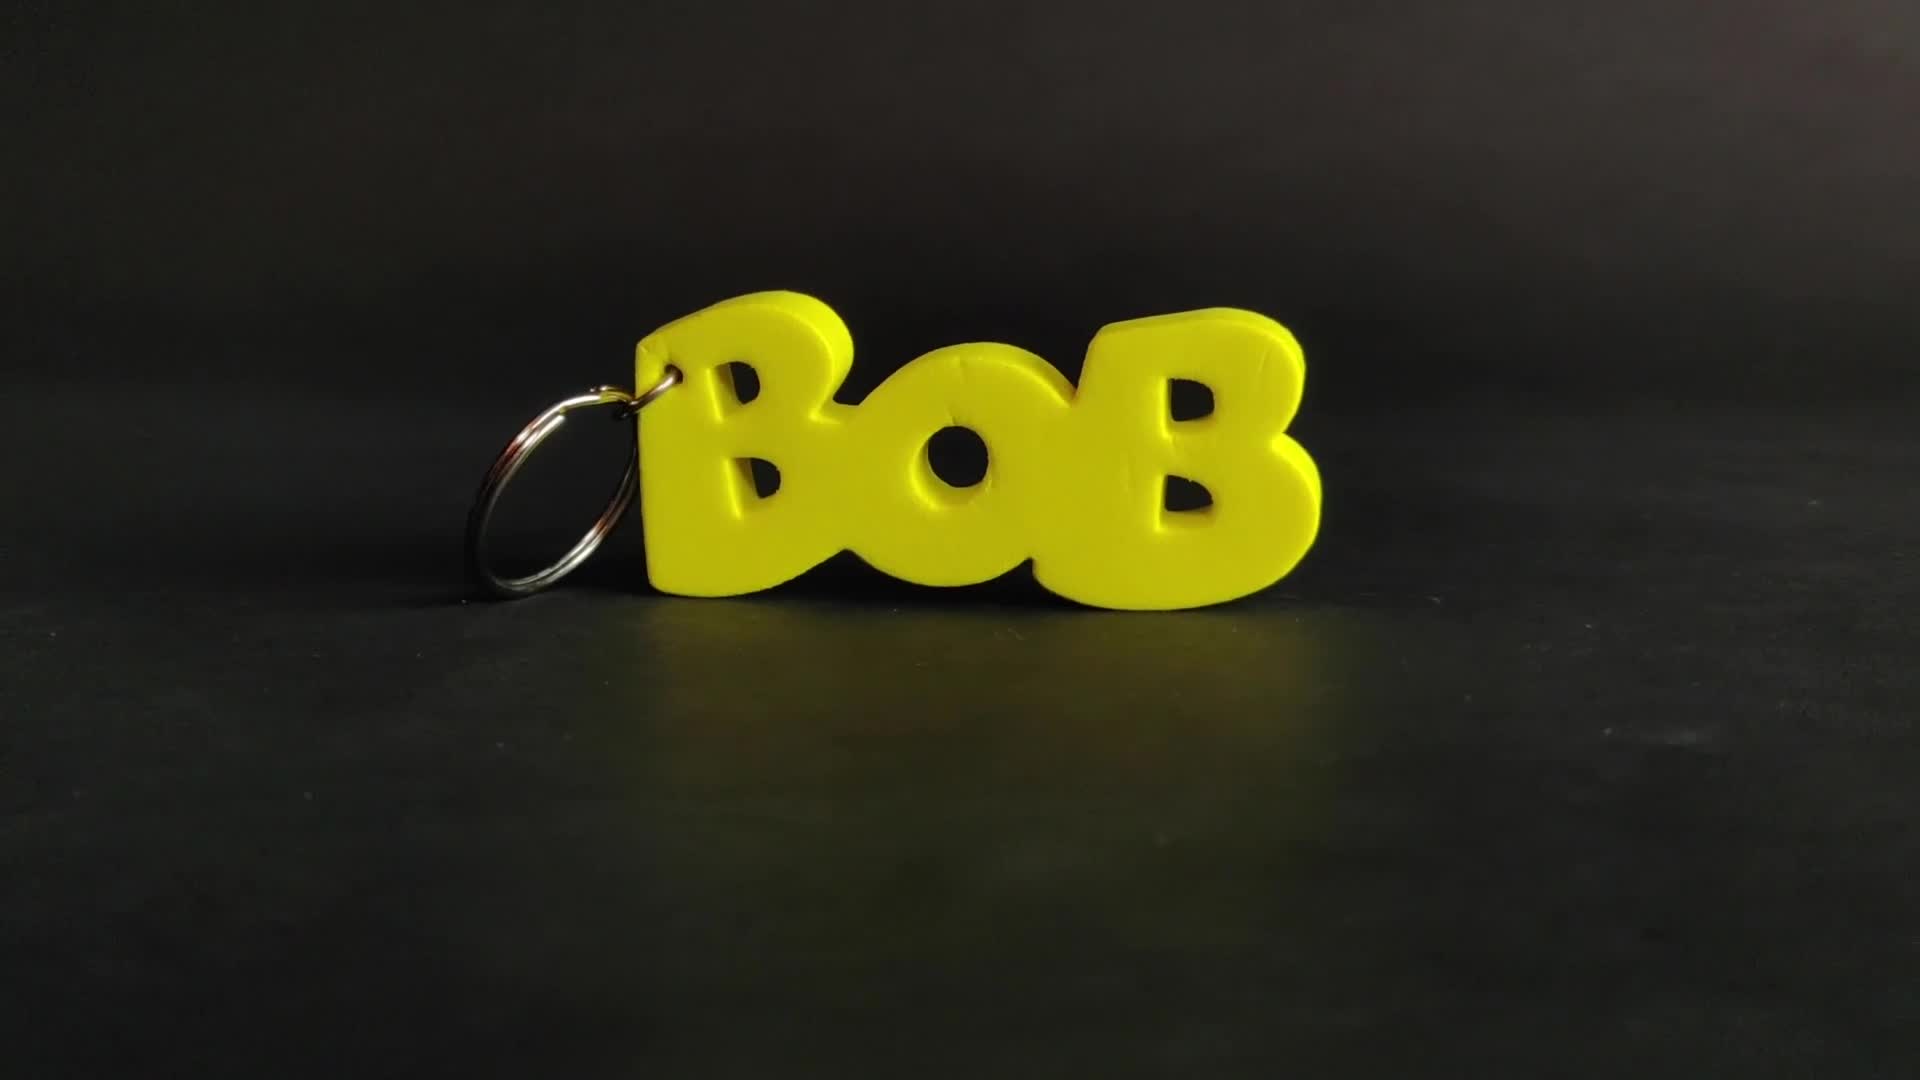 Non-Bob